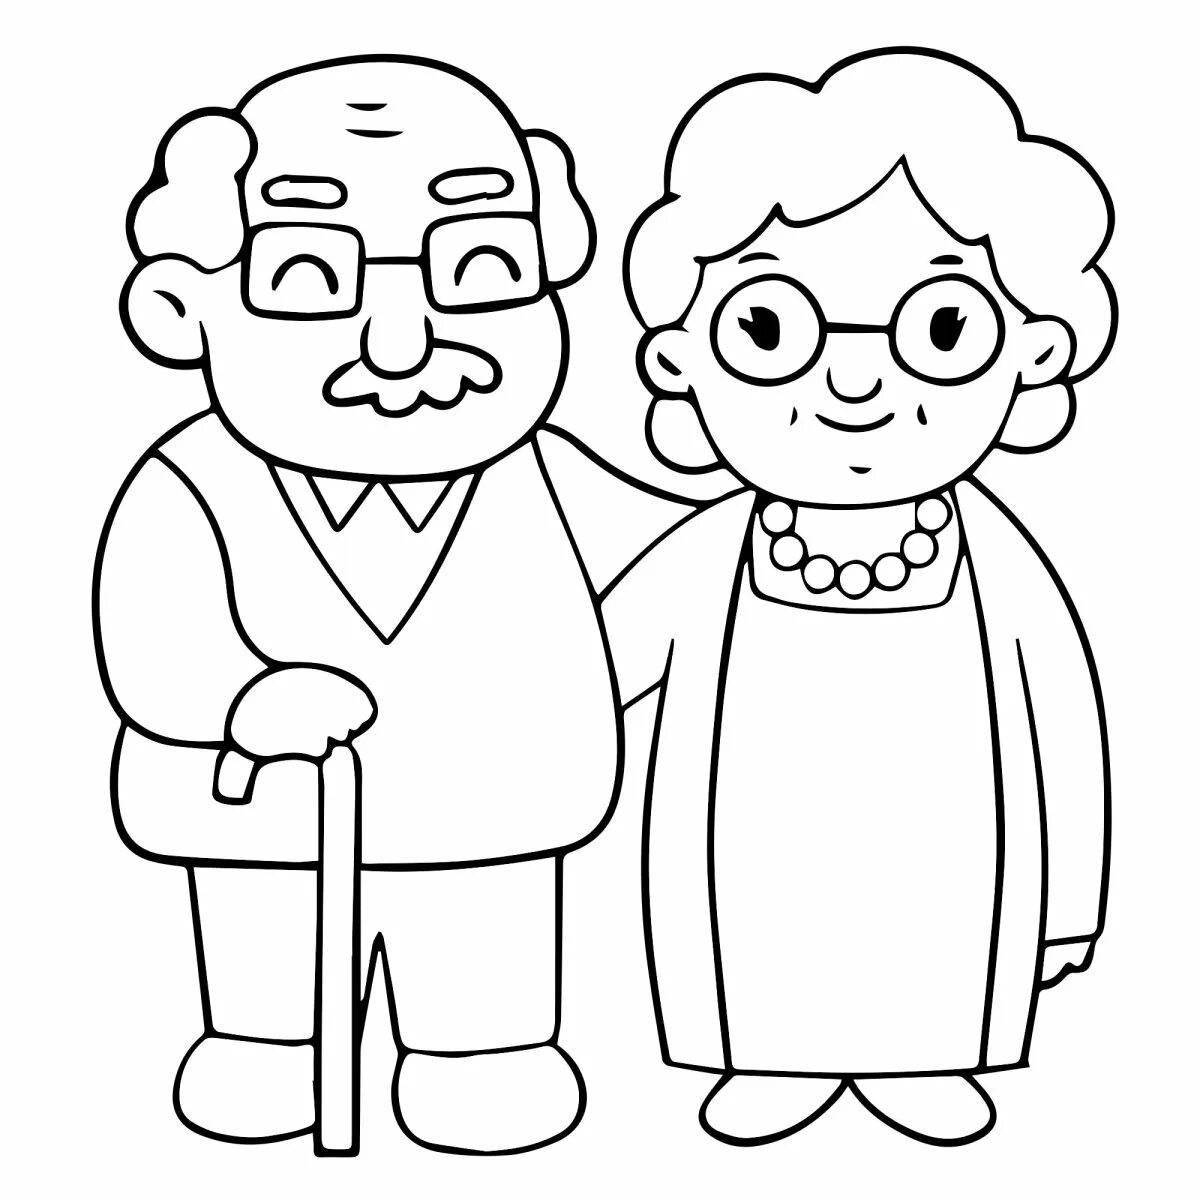 Royal grandparents coloring book